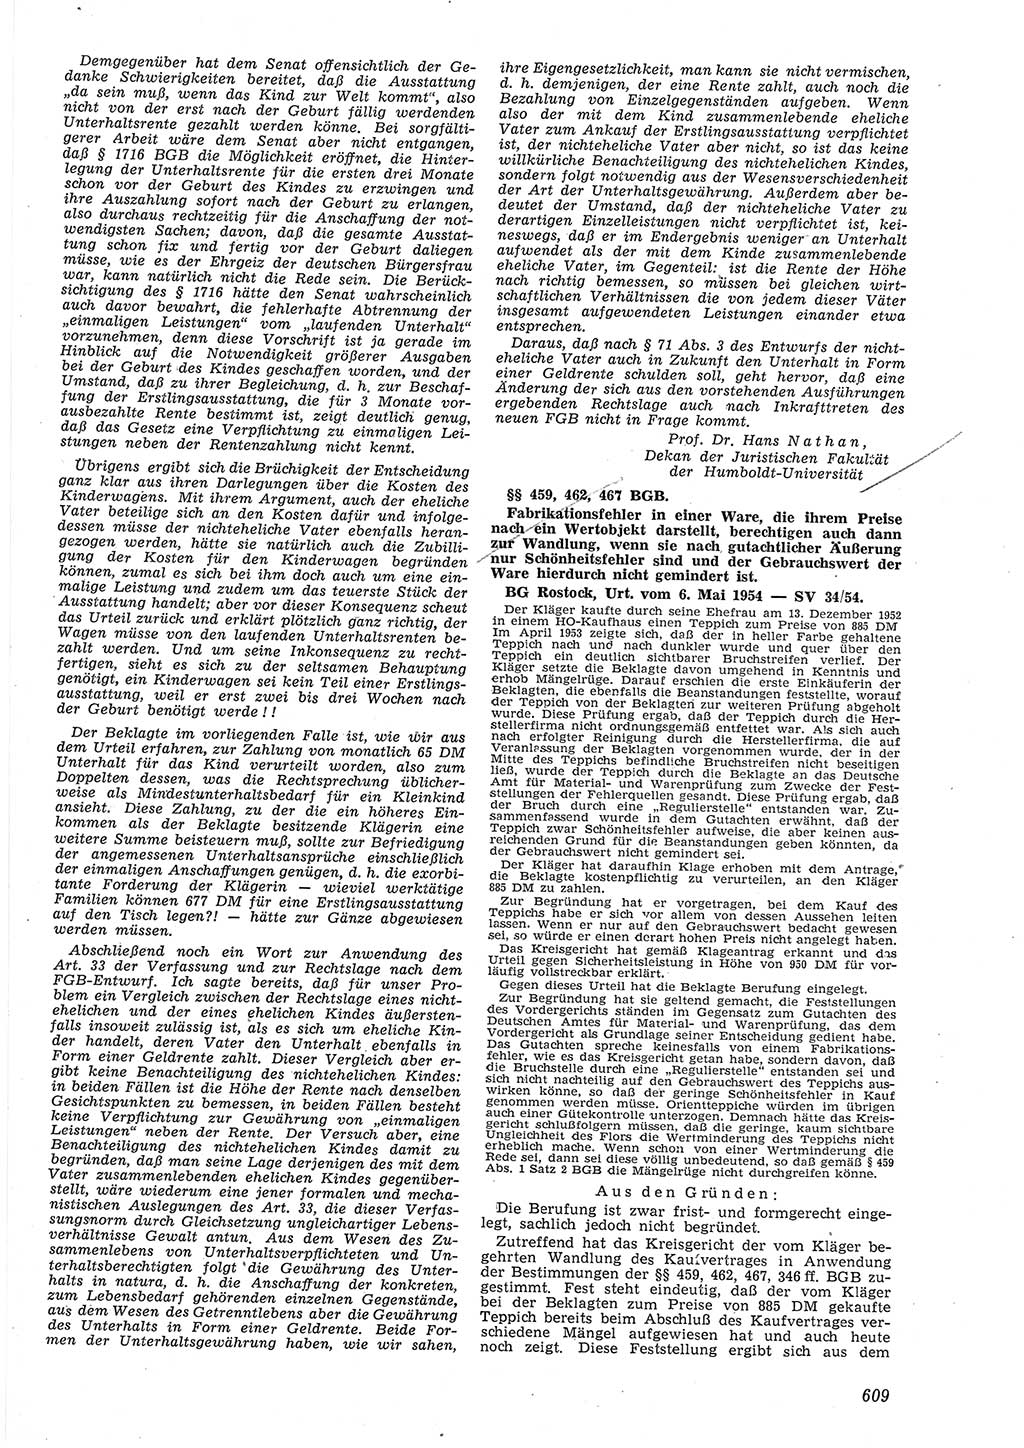 Neue Justiz (NJ), Zeitschrift für Recht und Rechtswissenschaft [Deutsche Demokratische Republik (DDR)], 8. Jahrgang 1954, Seite 609 (NJ DDR 1954, S. 609)